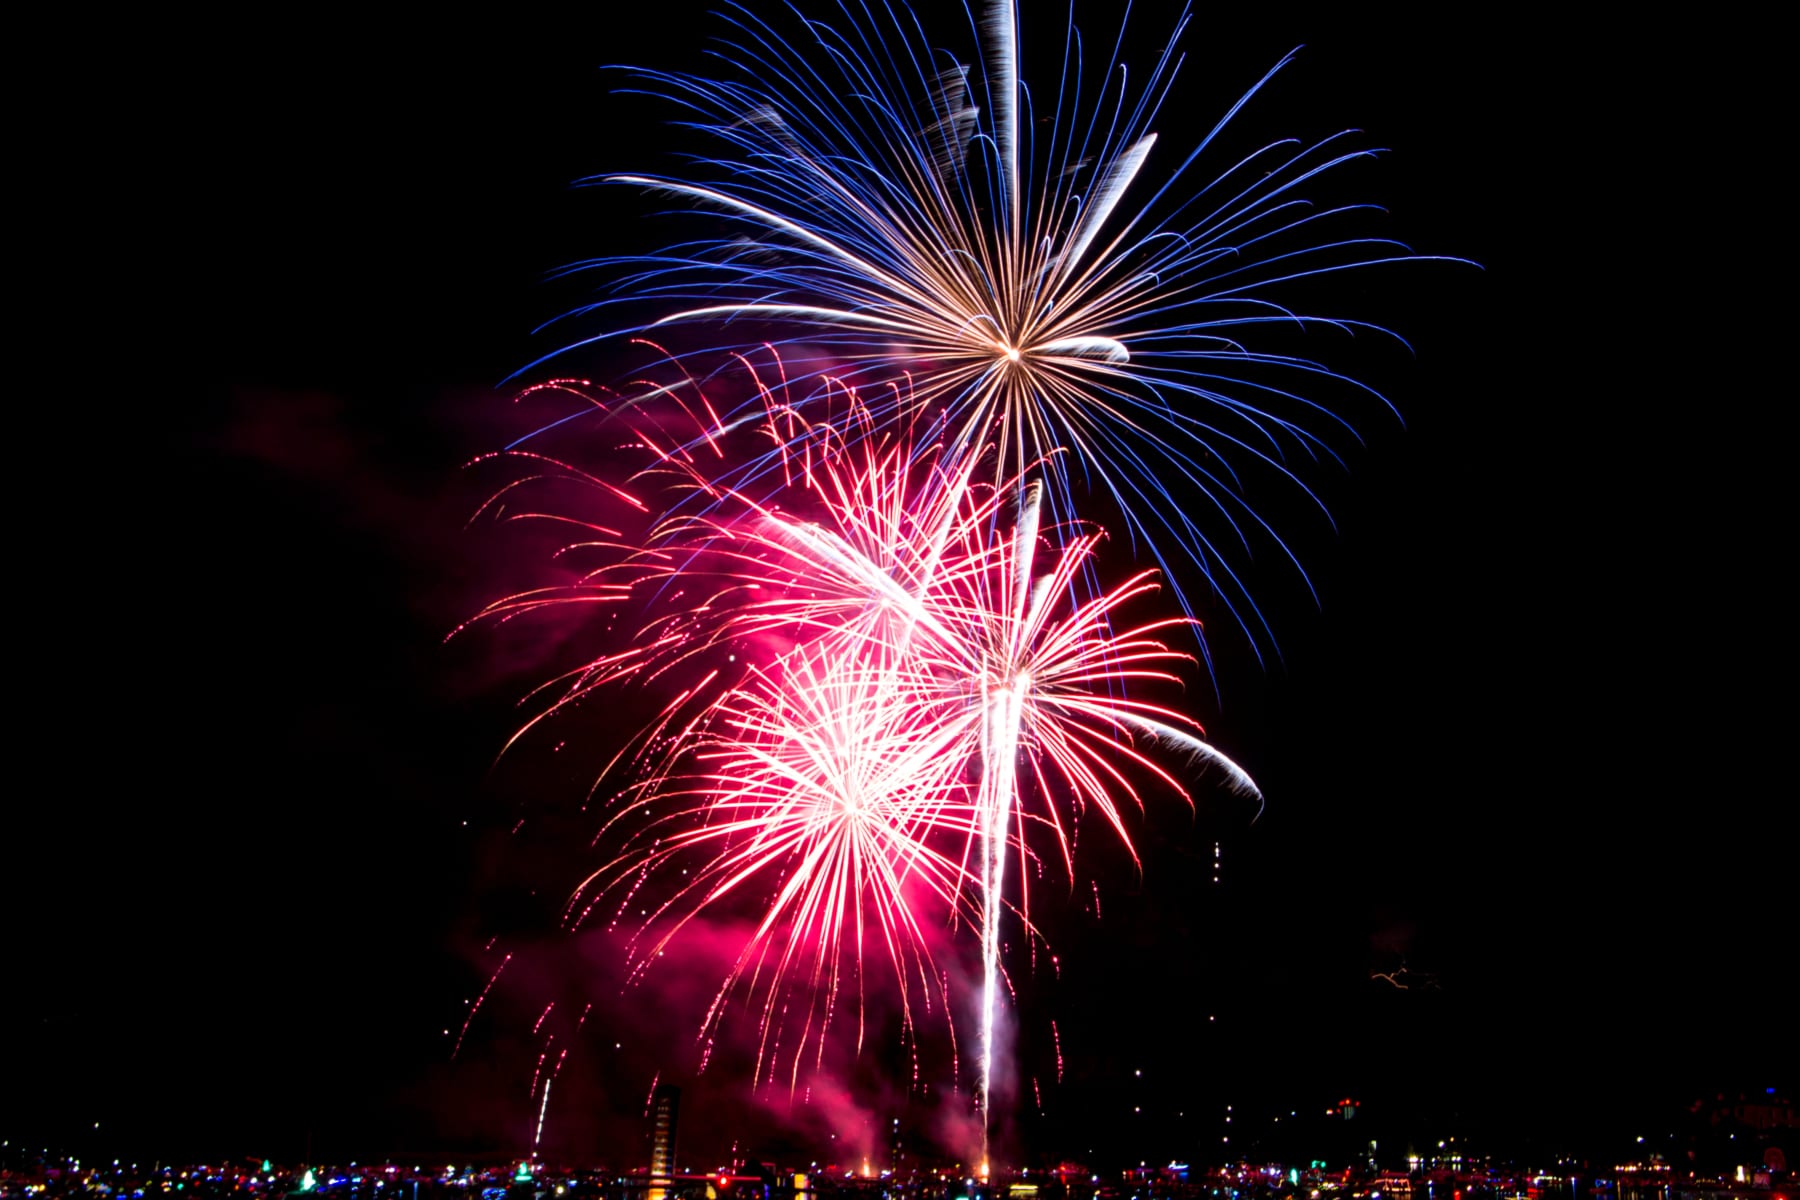 Fireworks during celebration.